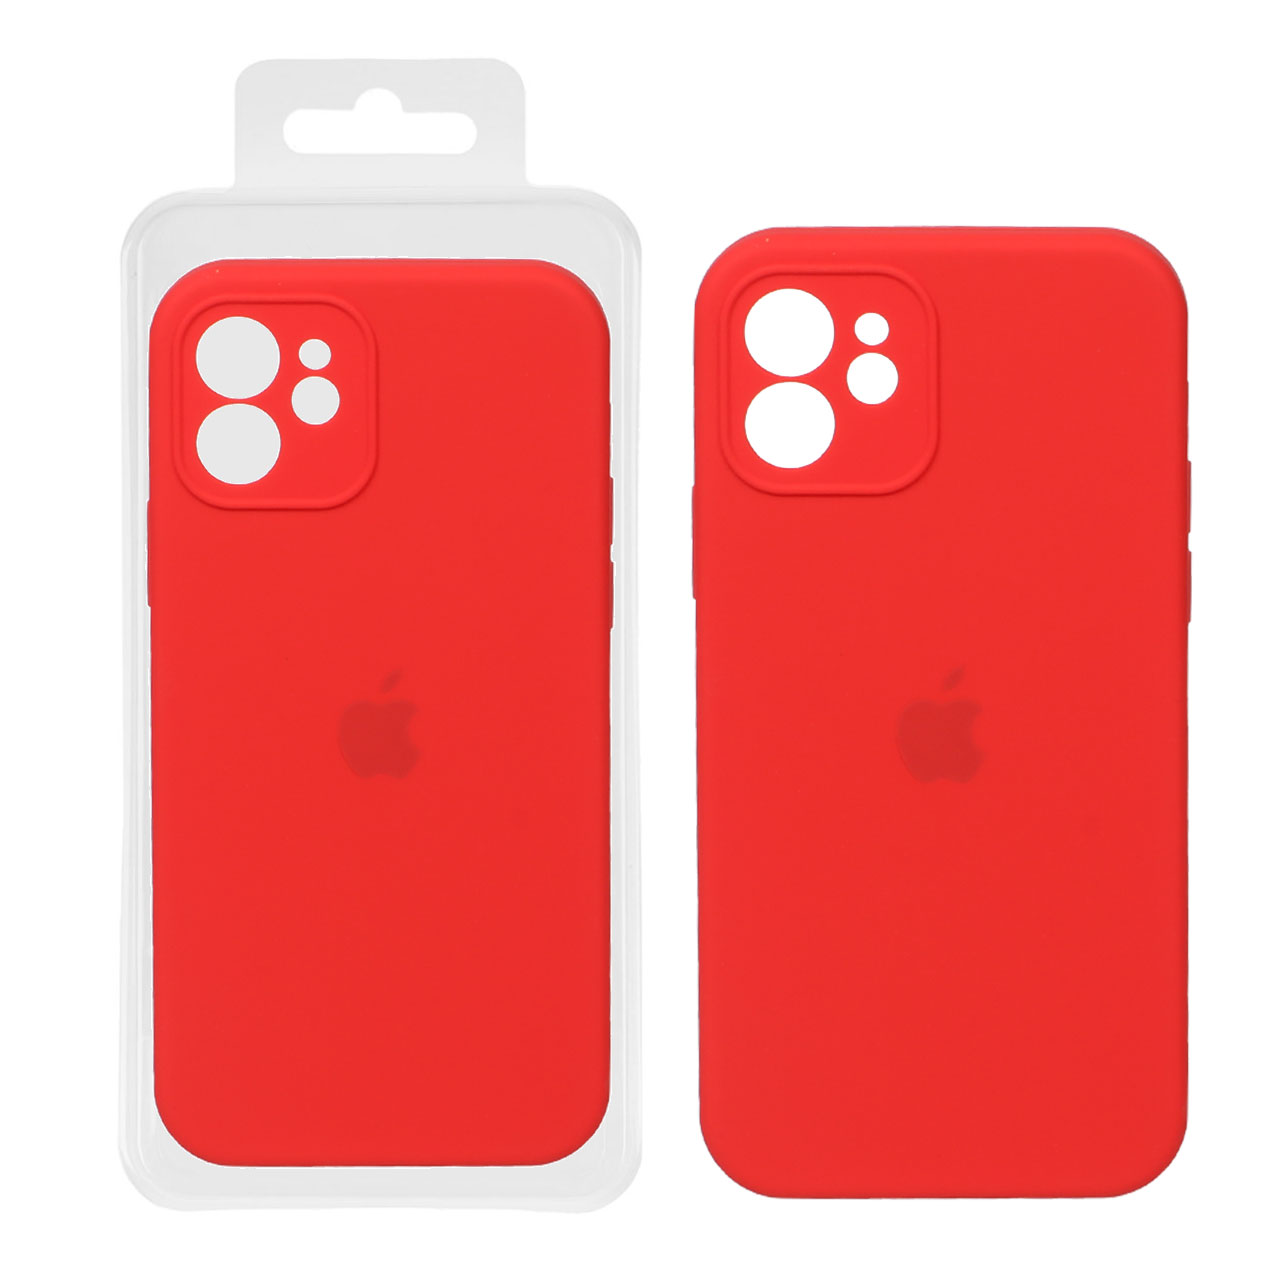 کاور سیلیکون کپی  مناسب گوشی موبایل آیفون 12 – قرمز